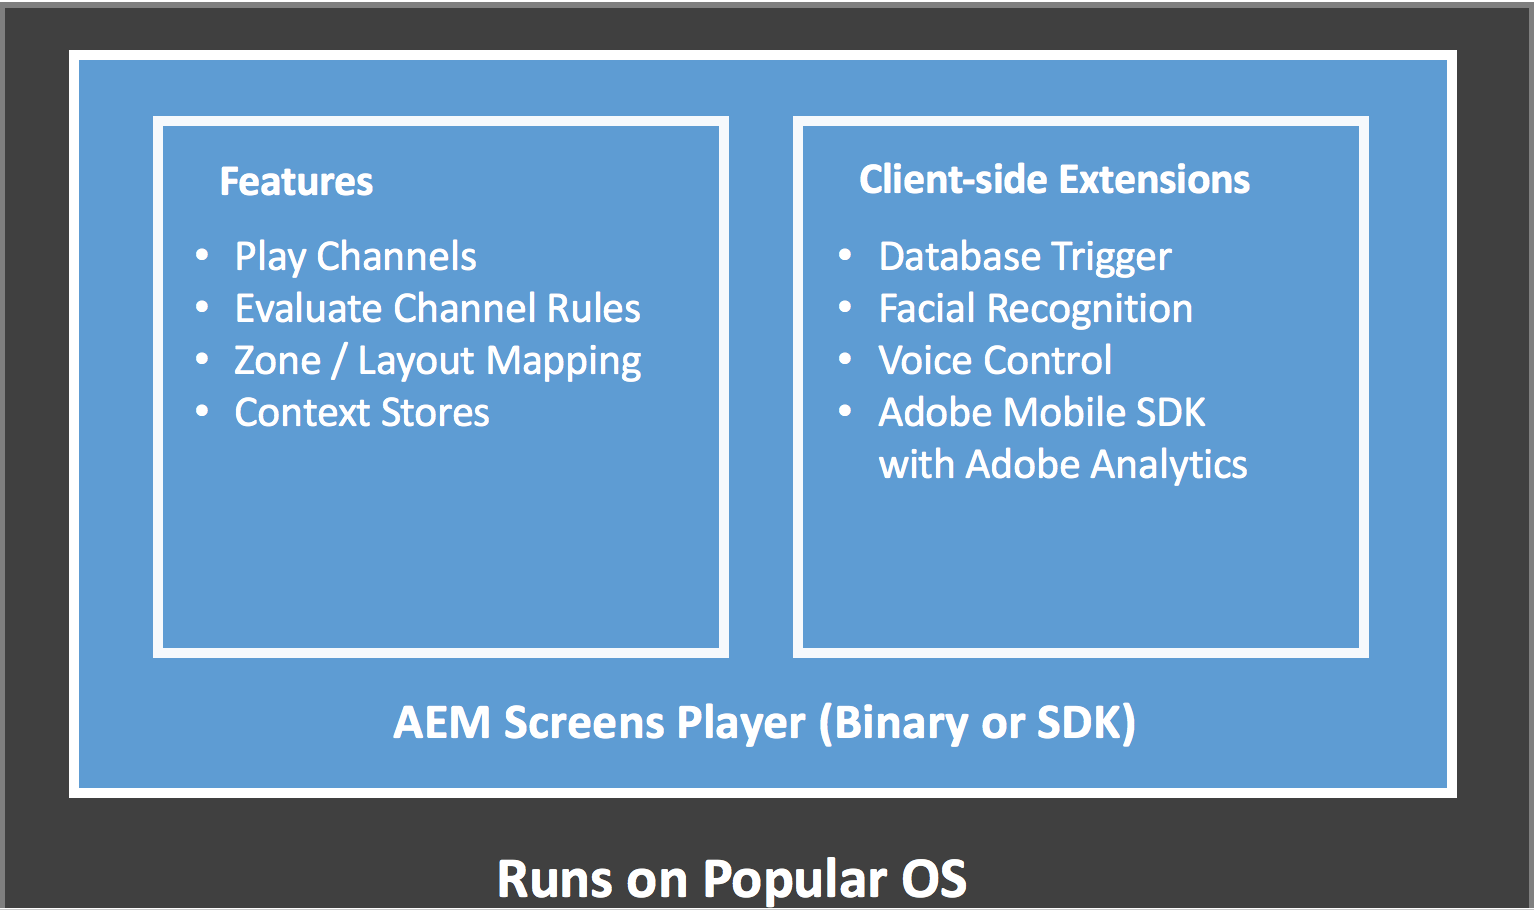 AEM Screens Player